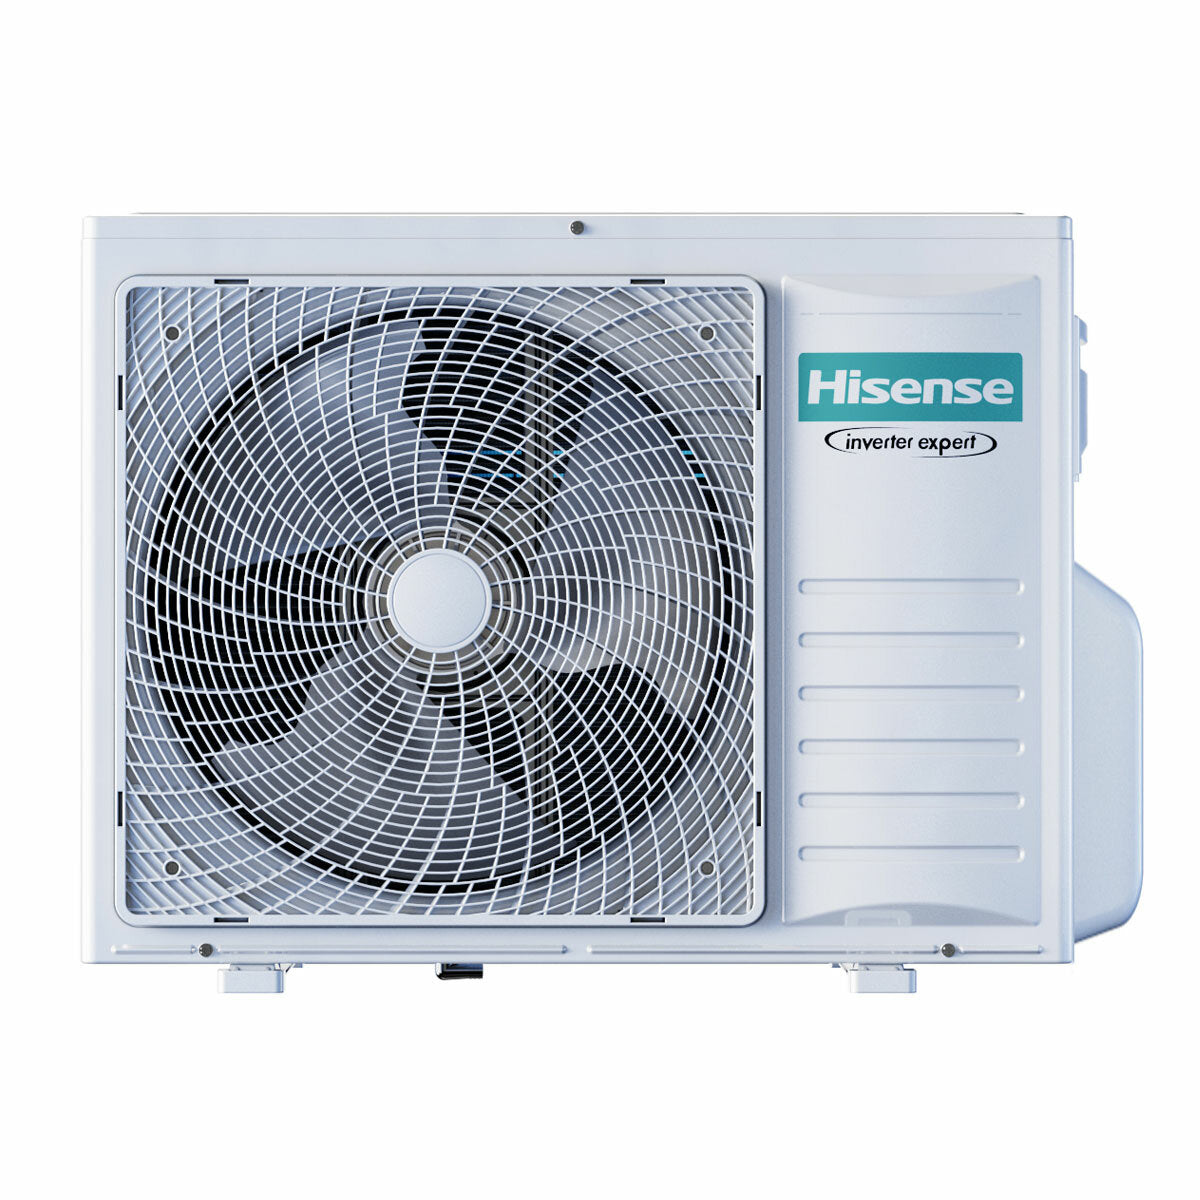 Hisense Hi-Comfort quadri split air conditioner 7000+7000+7000+18000 BTU inverter A++ wifi outdoor unit 8 kW